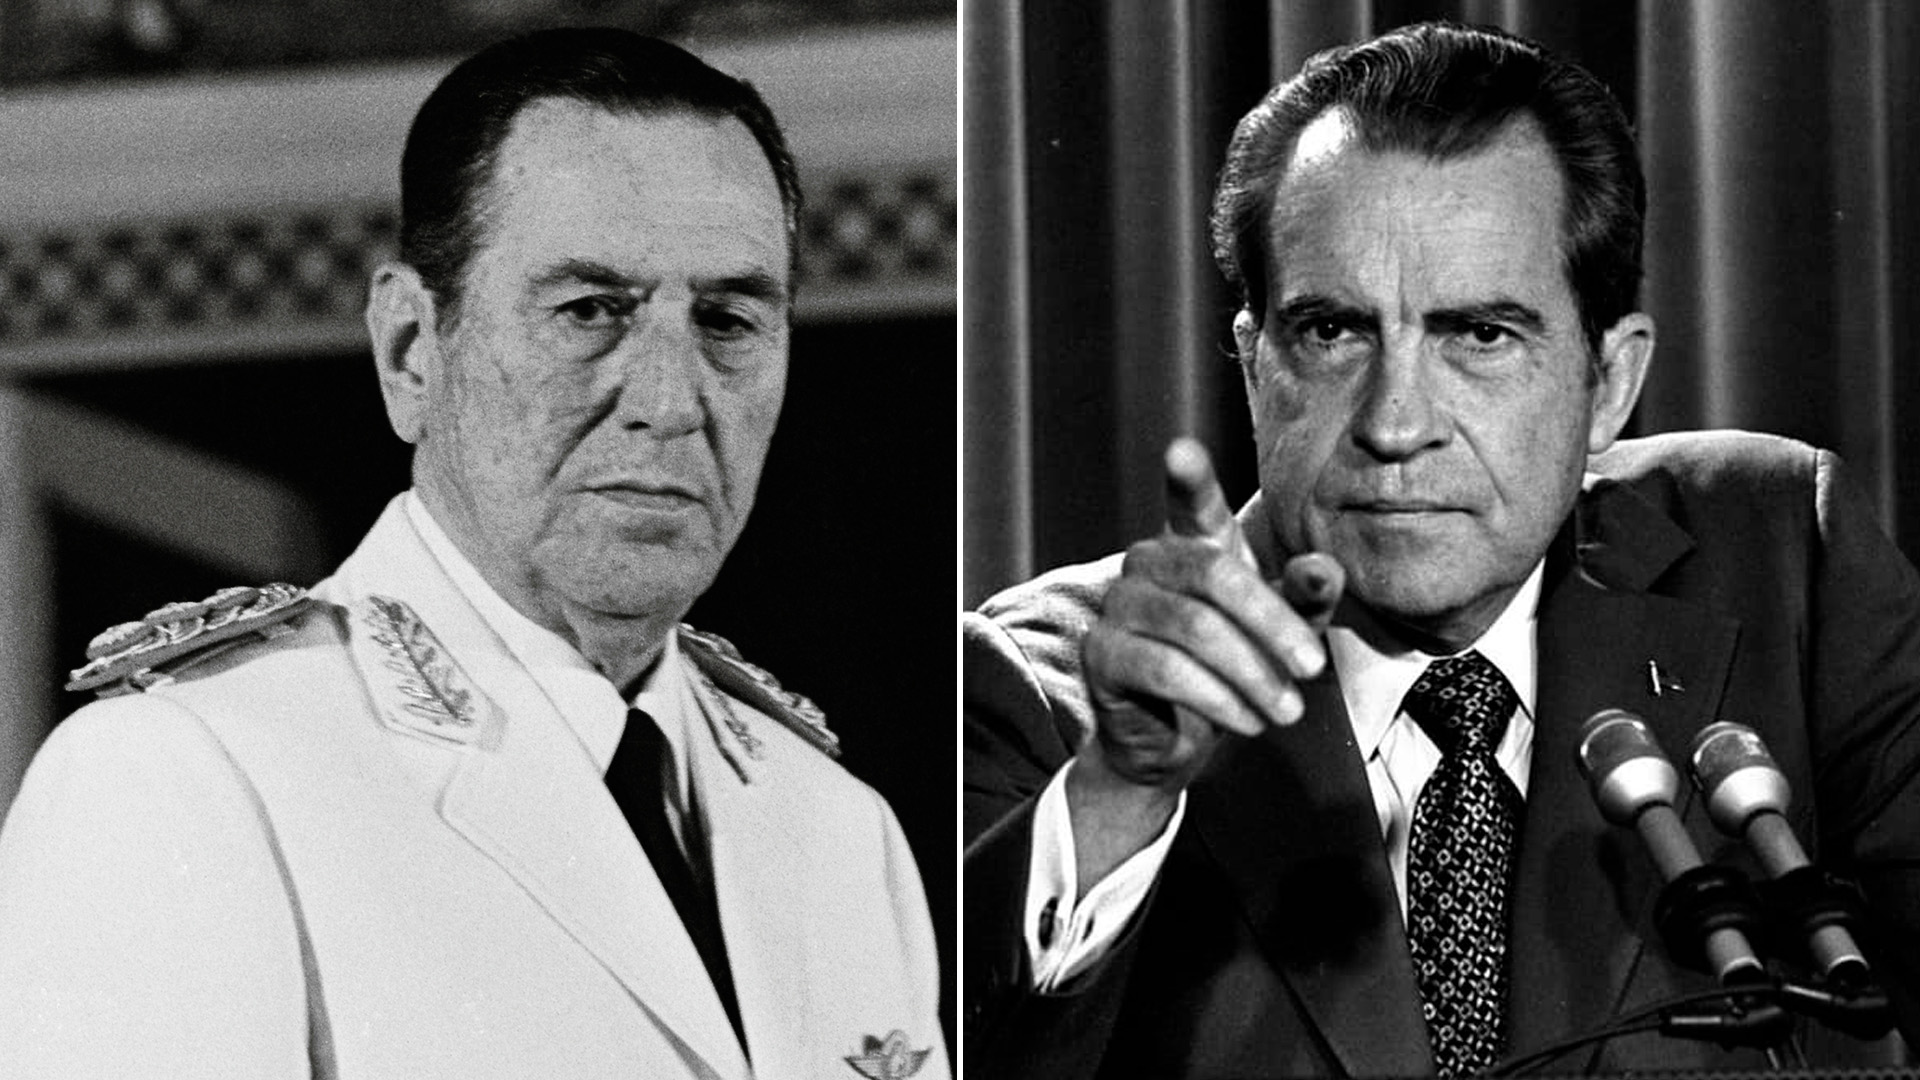 Un gobierno sin reservas, inflación galopante y el insulto de Nixon a Perón: “Ese h... de p... dejó residuos”